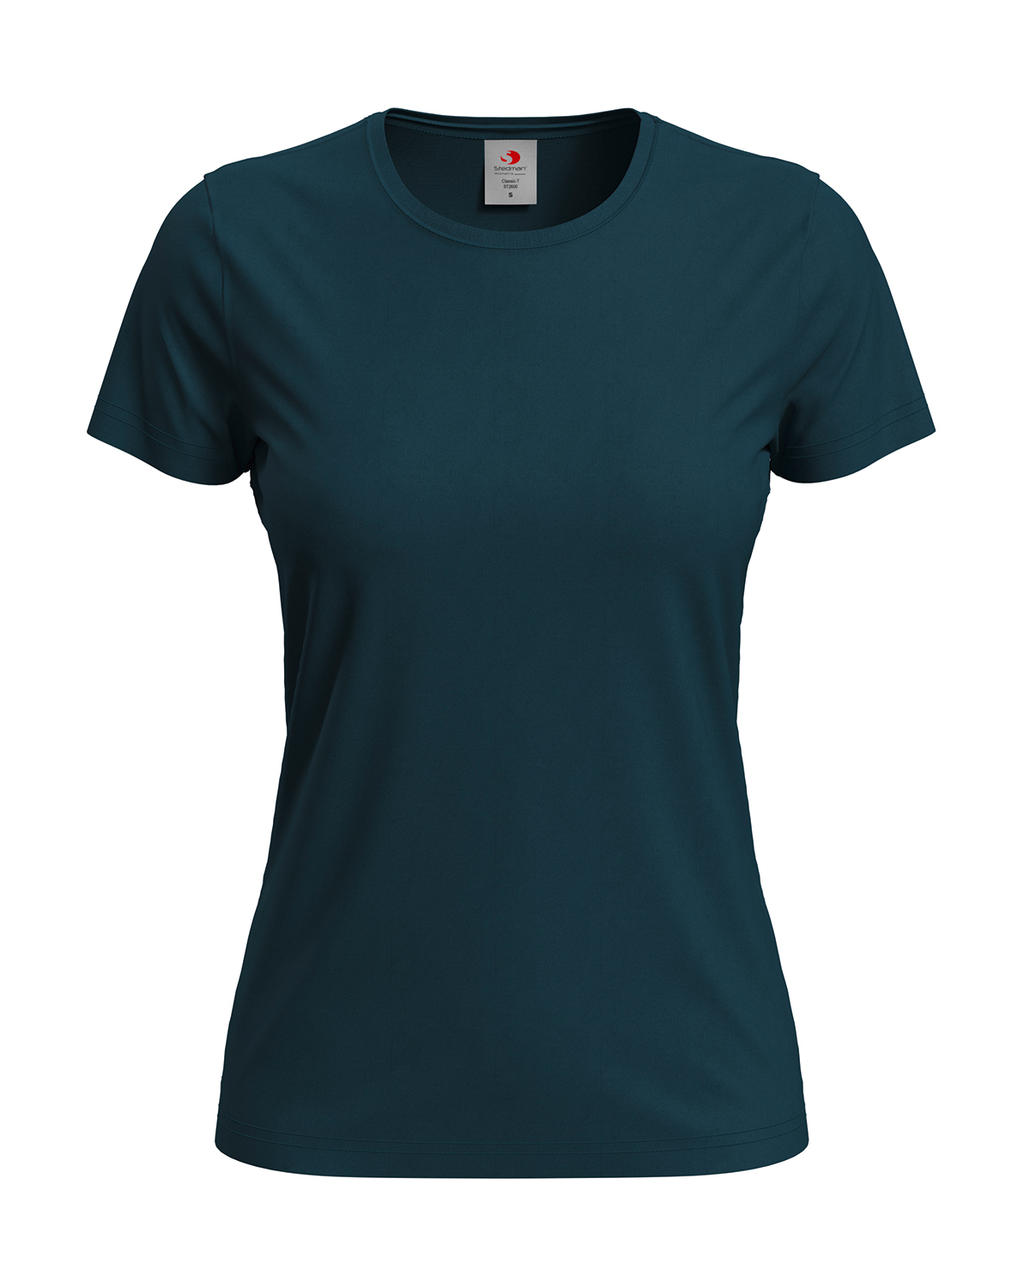 Tričko dámské Stedman Fitted s kulatým výstřihem - tmavě modré, 3XL